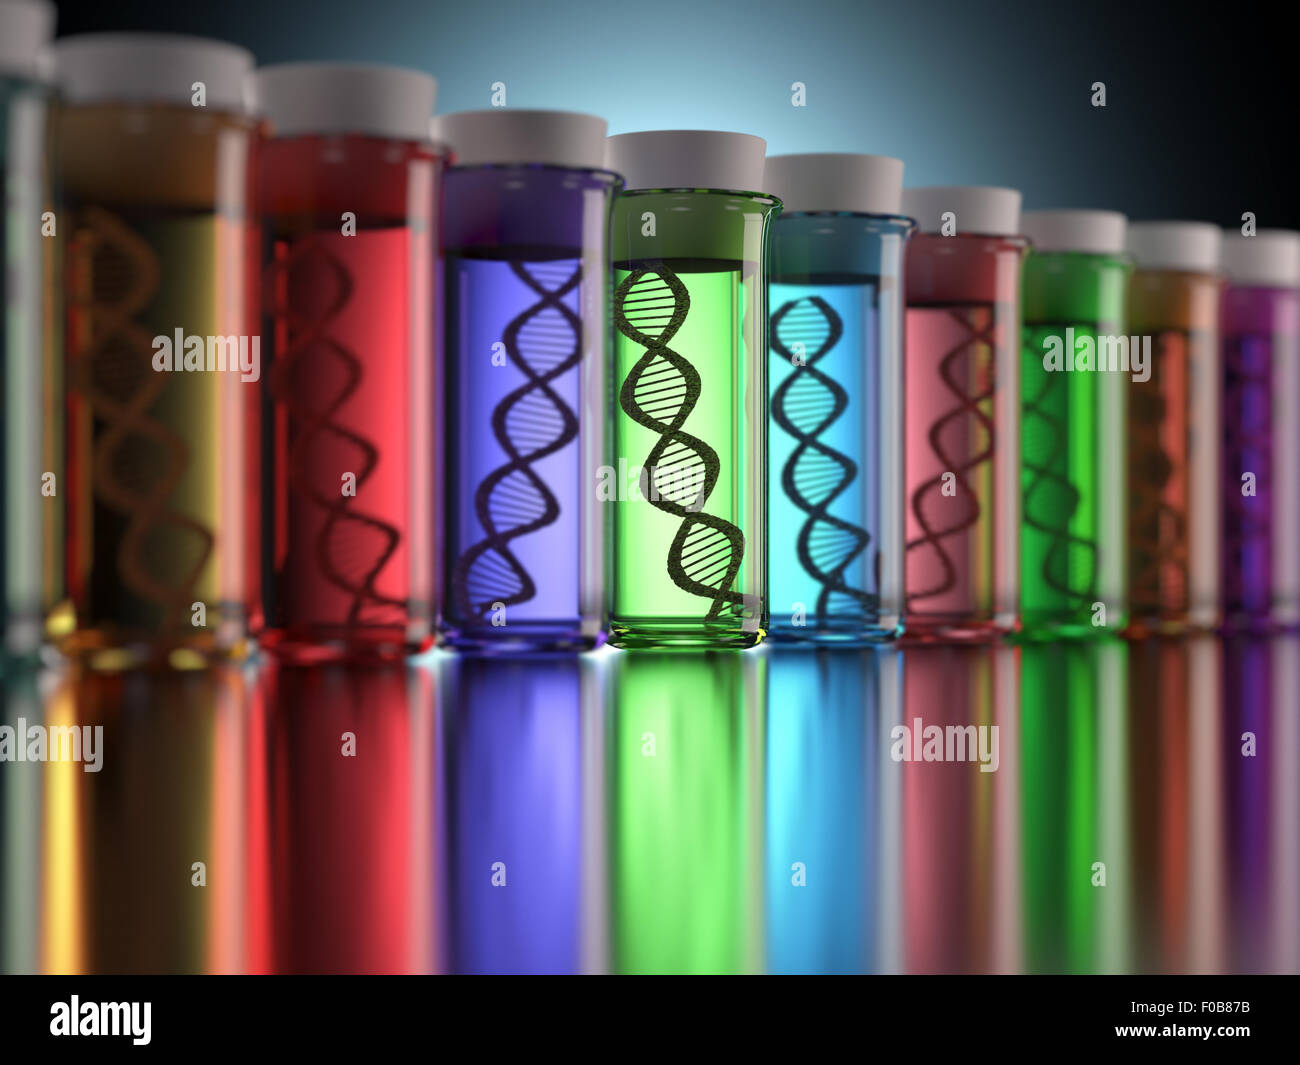 Tubes à essai de couleur avec les codes génétiques à l'intérieur. Notion de copie et modification génétique. Banque D'Images